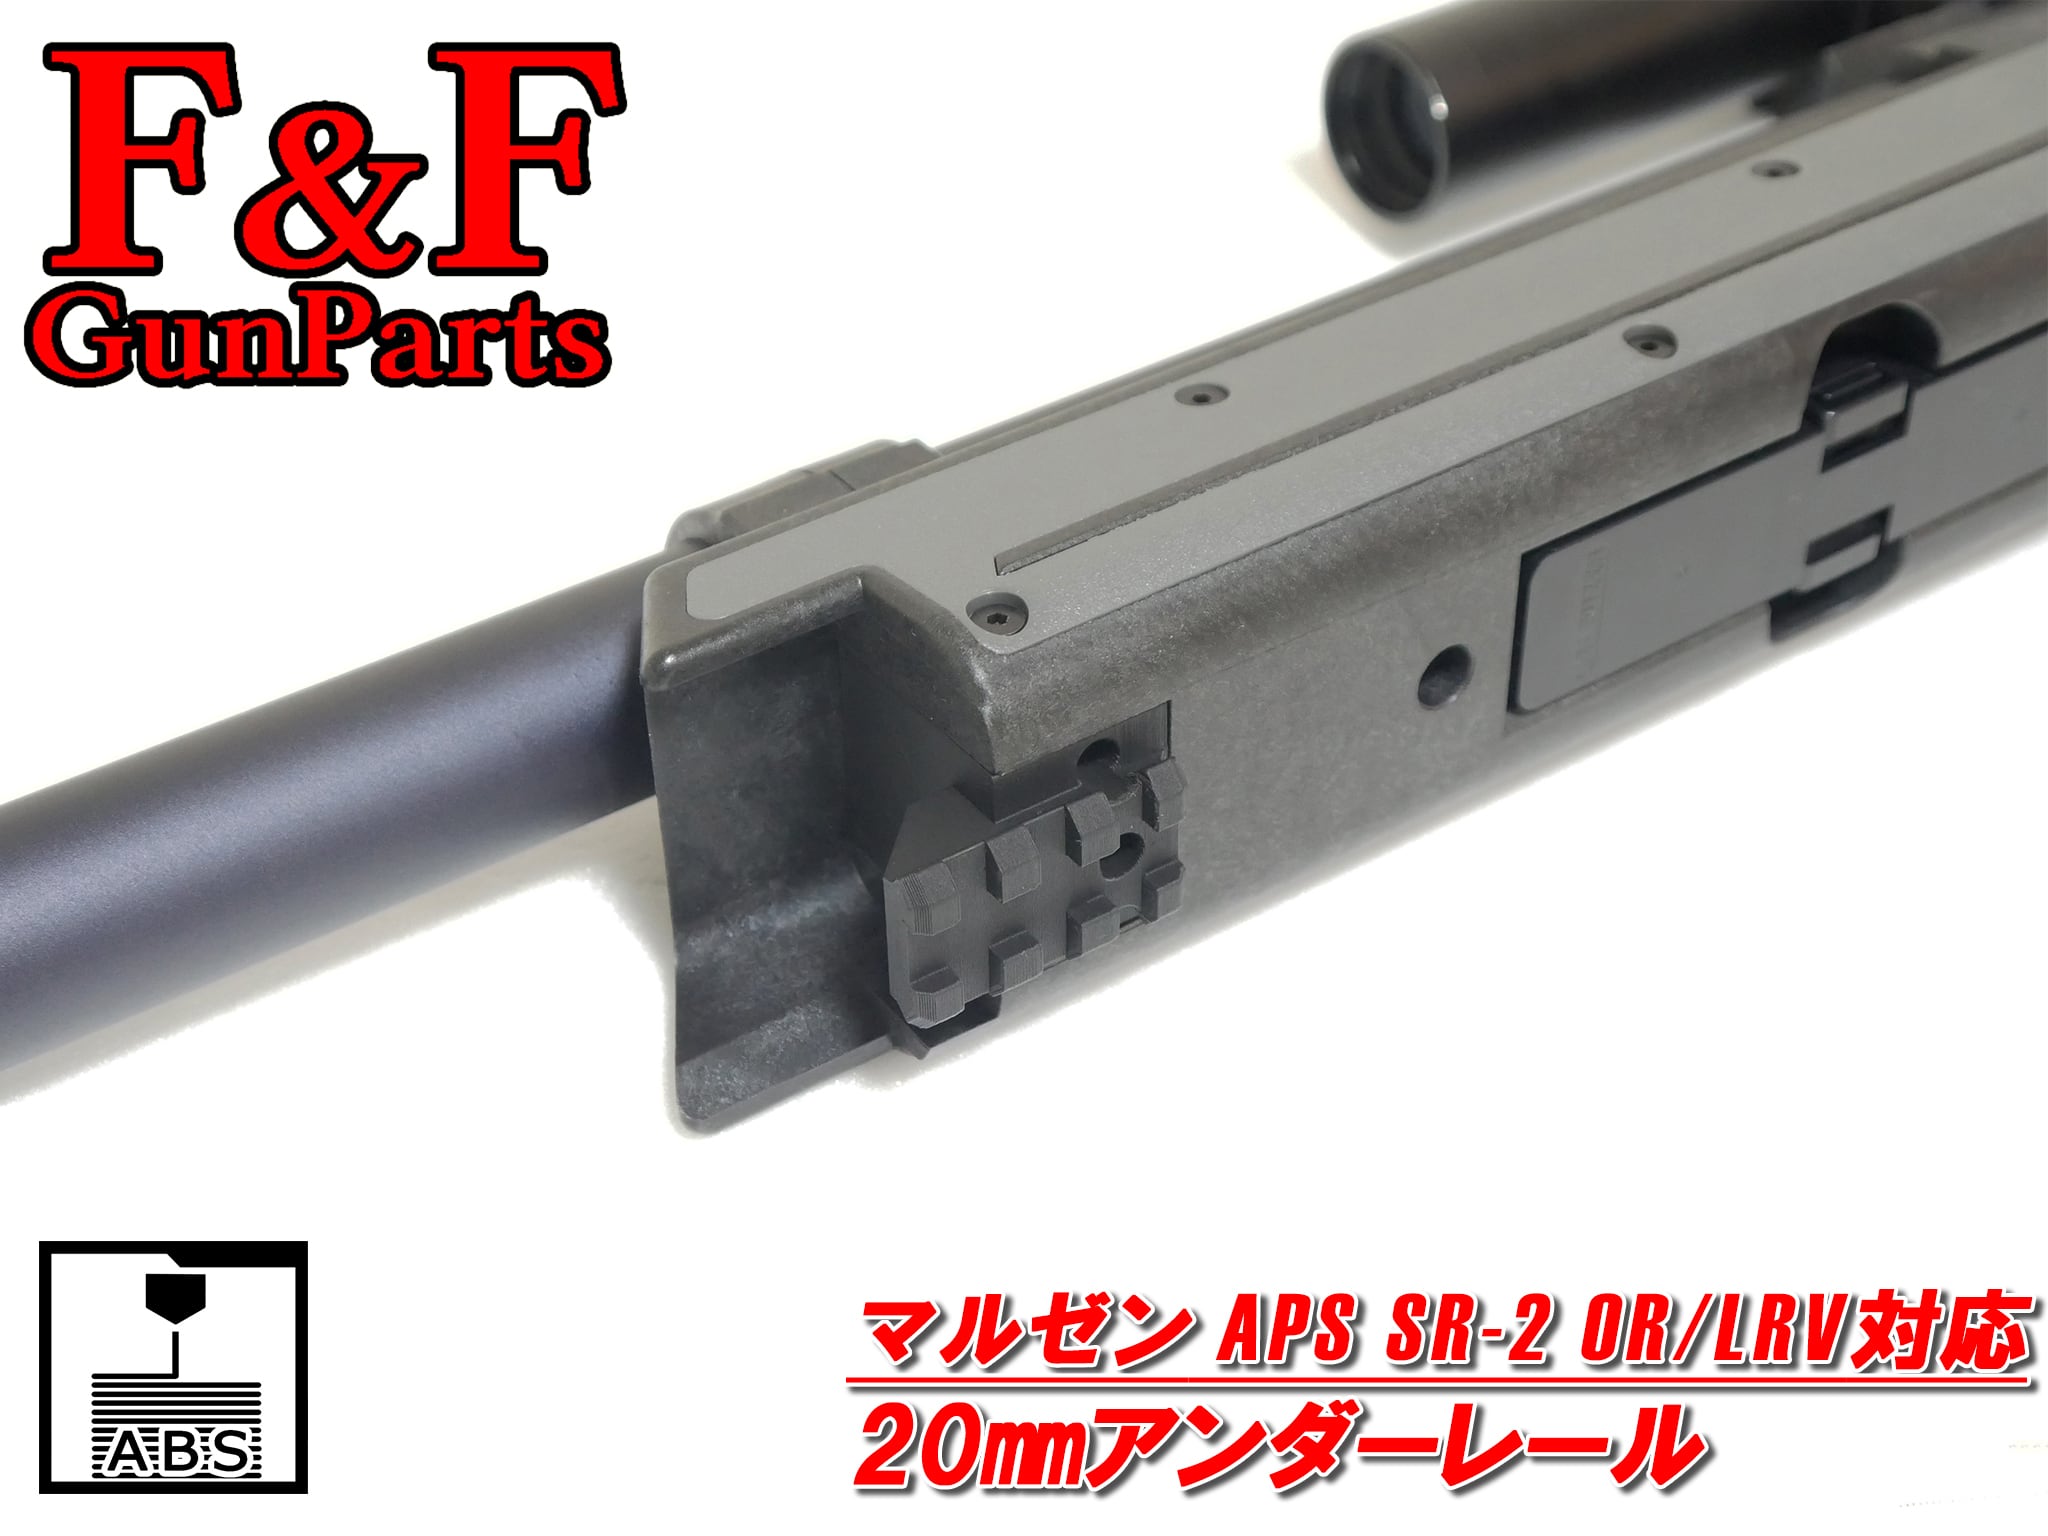 マルゼン APS SR-2 OR/LRV対応 20mmアンダーレール | F&F GunParts